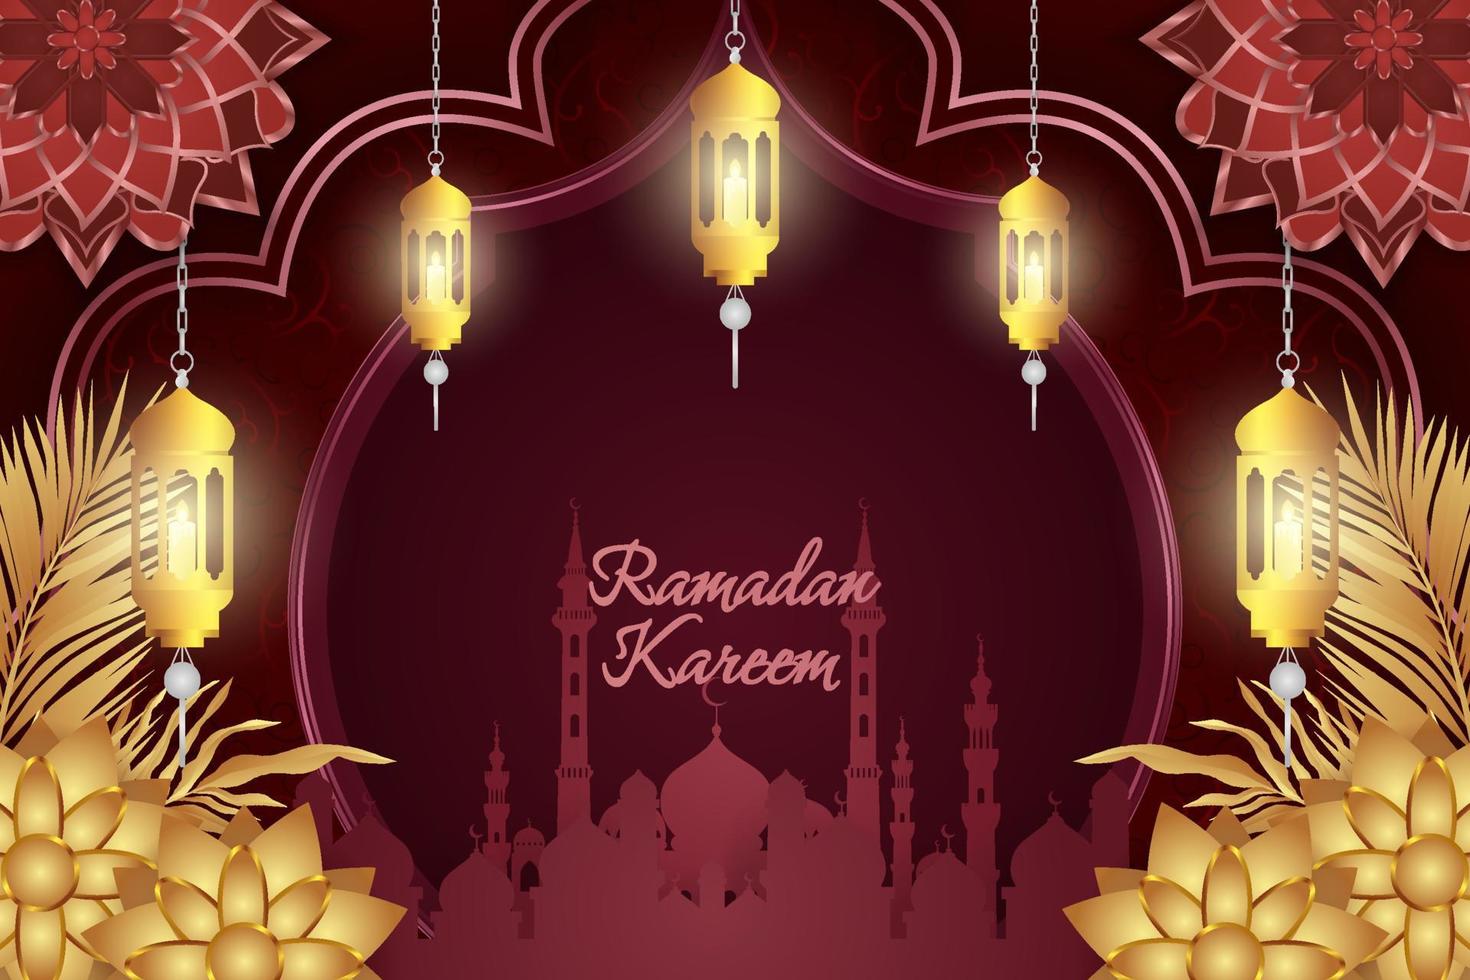 ramadan kareem islamischer stil rot und gold luxus mit moschee und schöner verzierung vektor